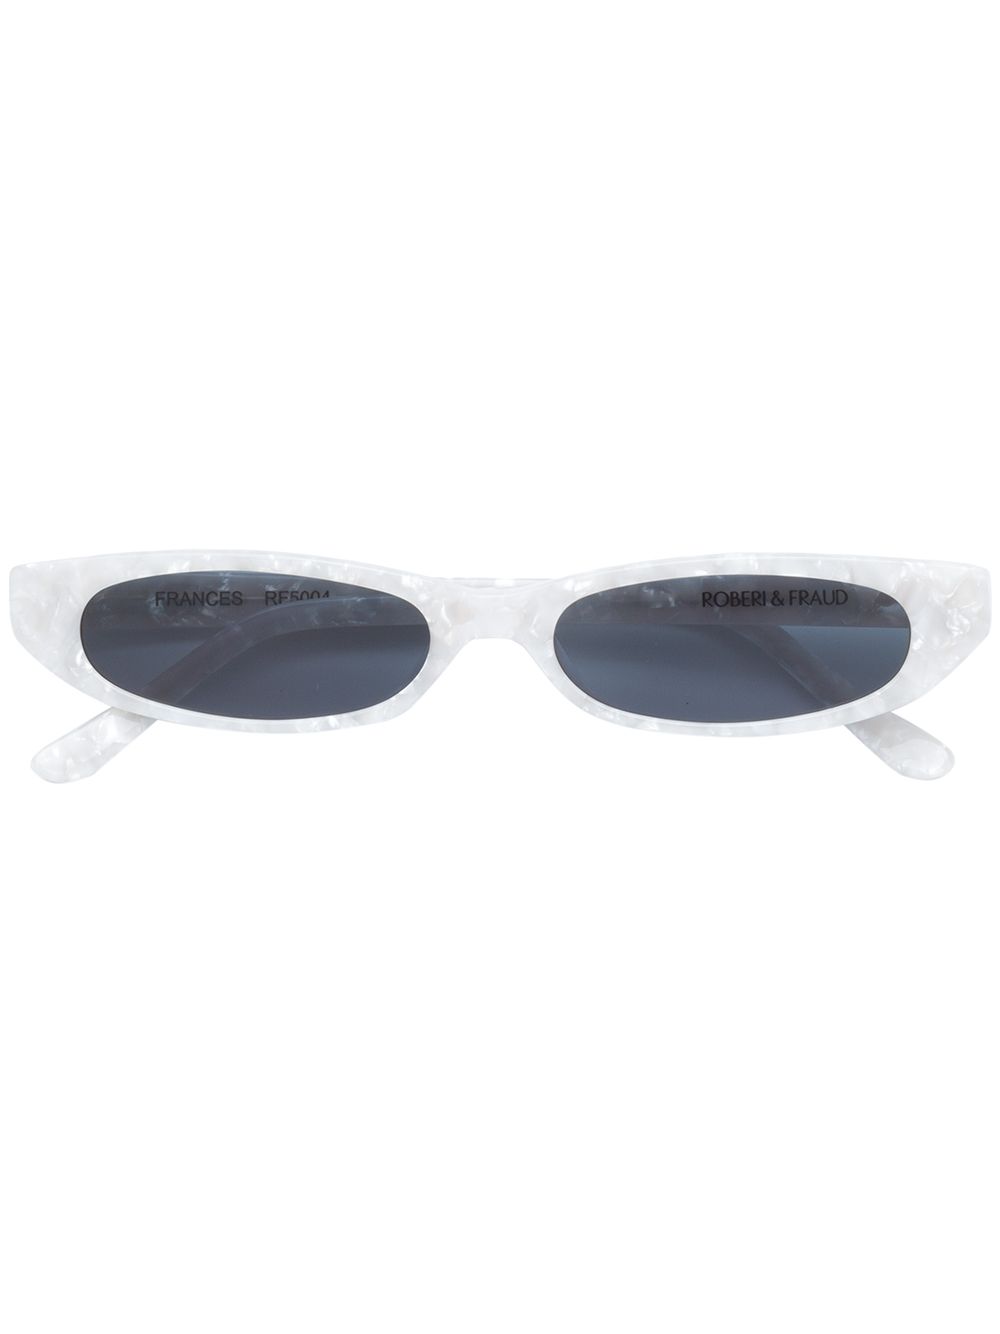 фото Roberi & fraud солнцезащитные очки 'frances'